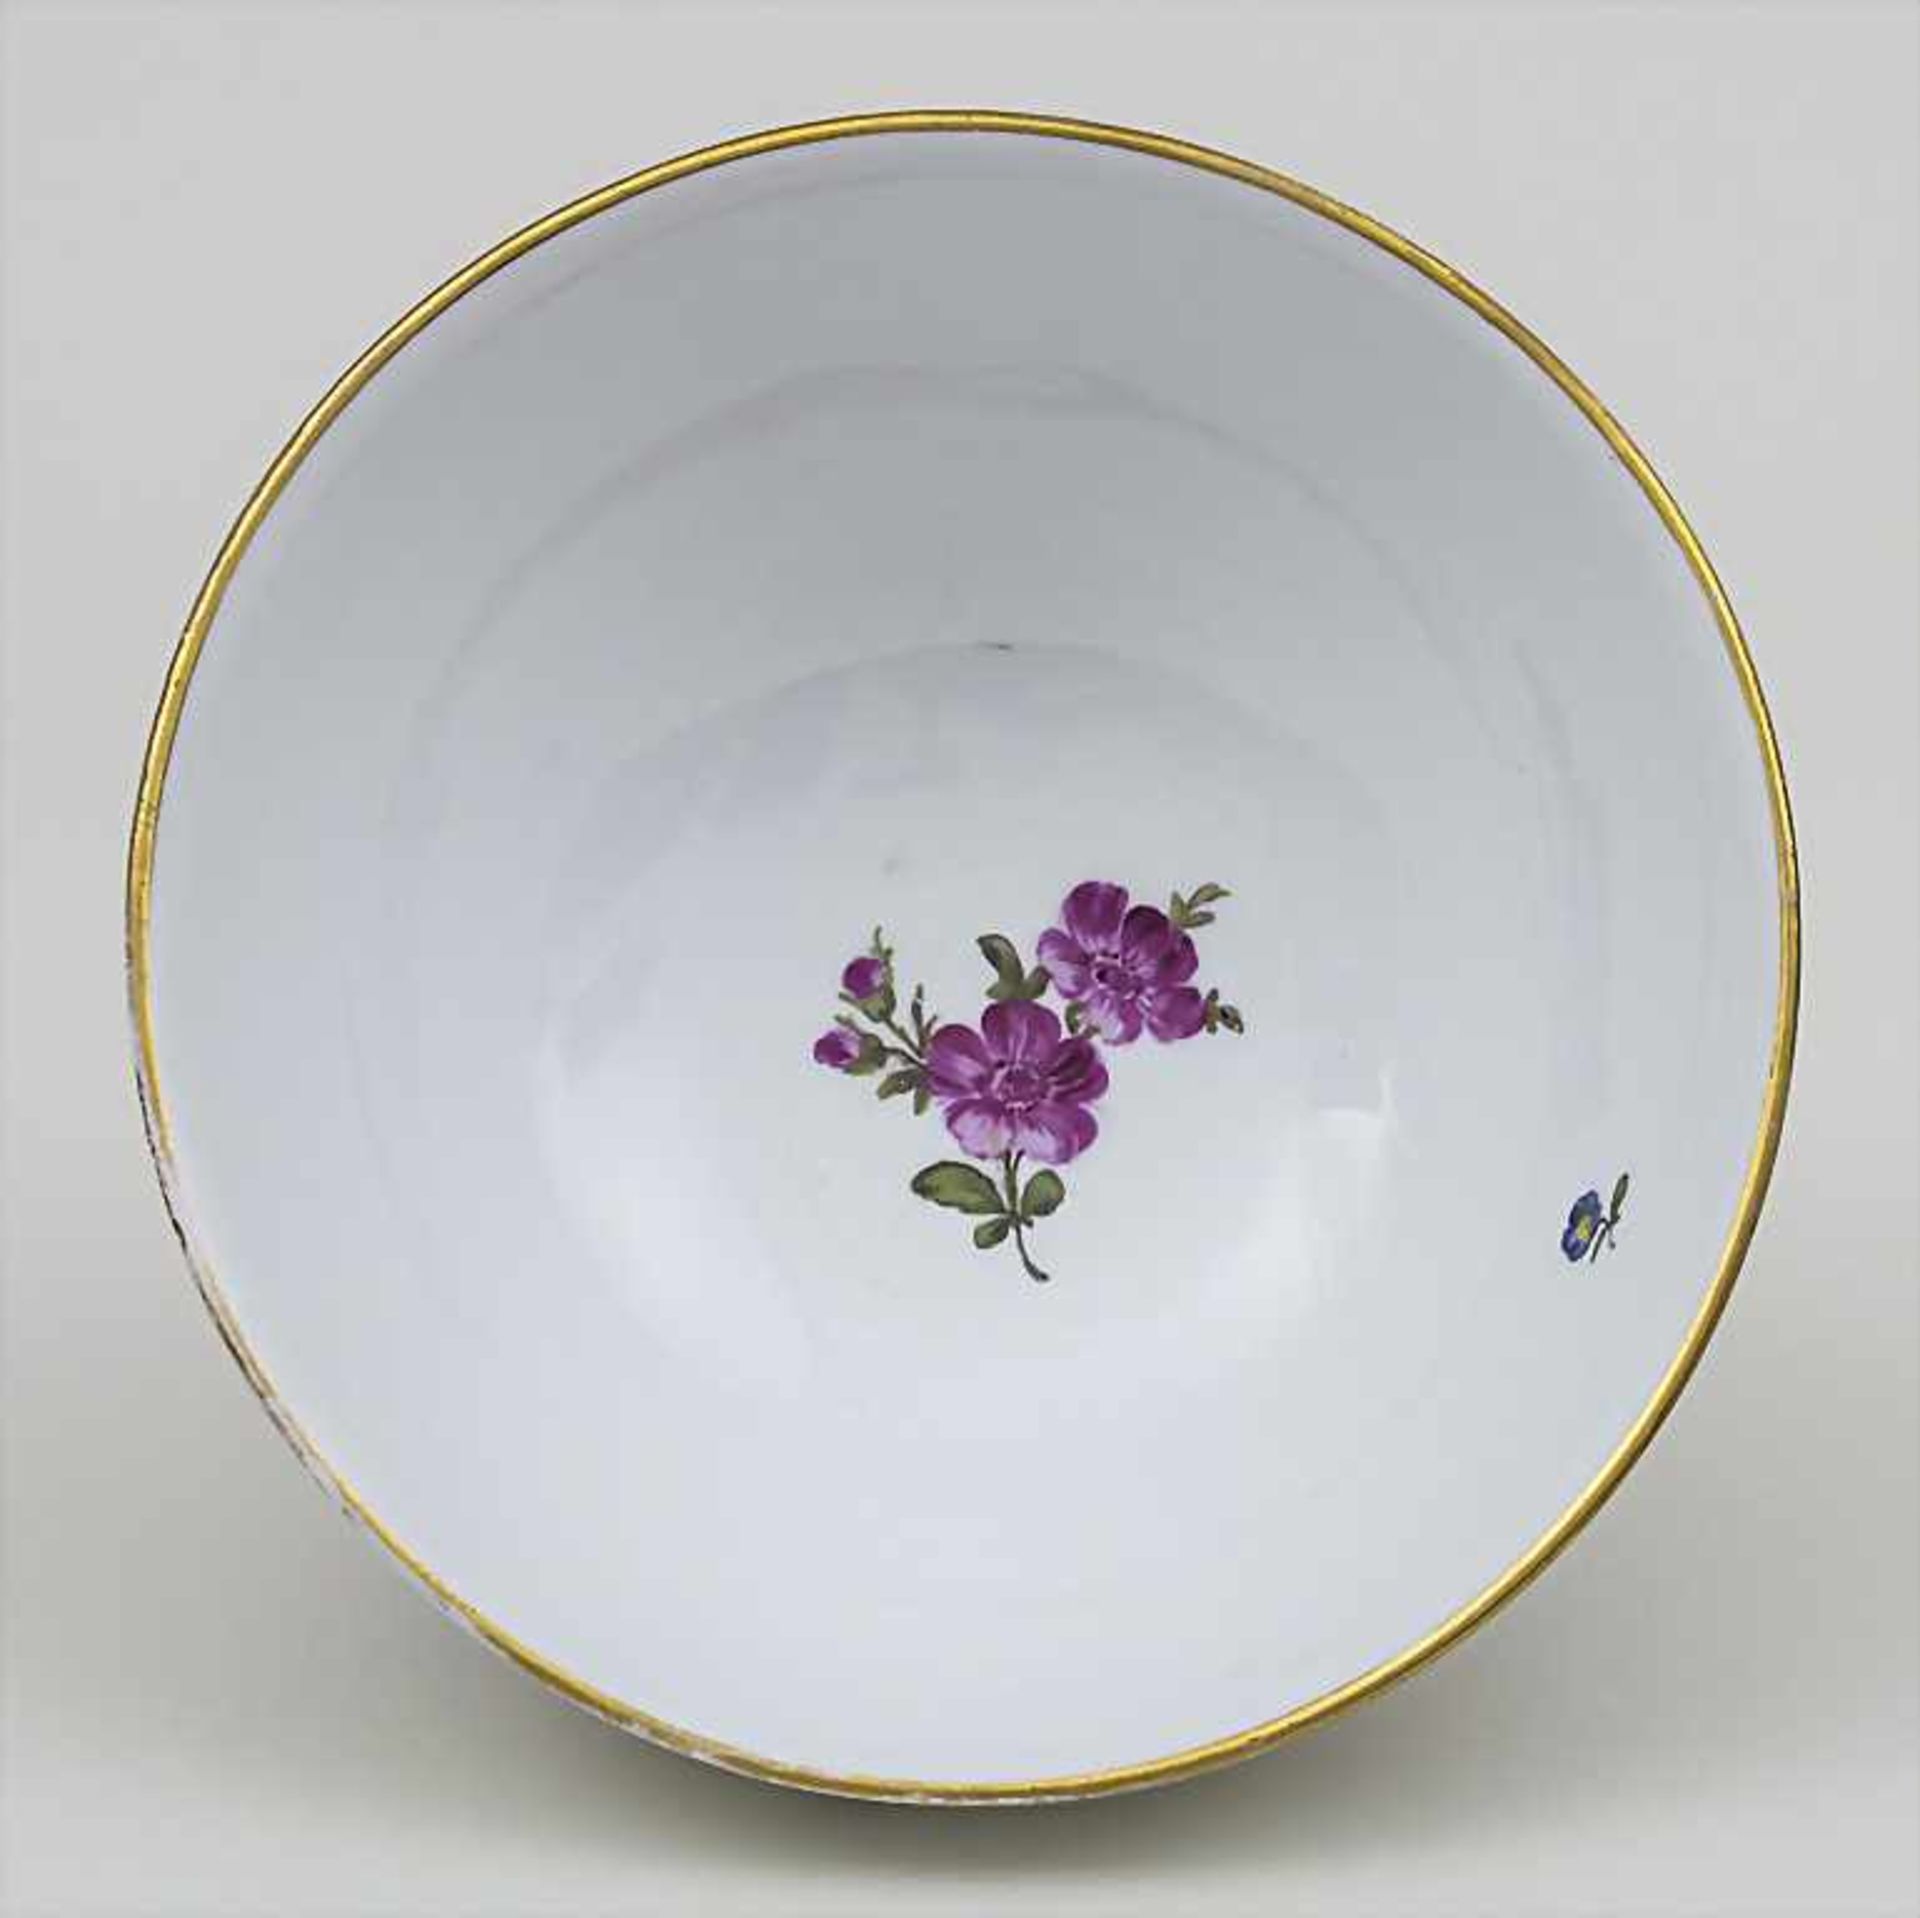 Große Kumme mit Kirschblütenzweigen, Vögeln und Insekten / A bowl with cherry blossom branches, - Image 2 of 3